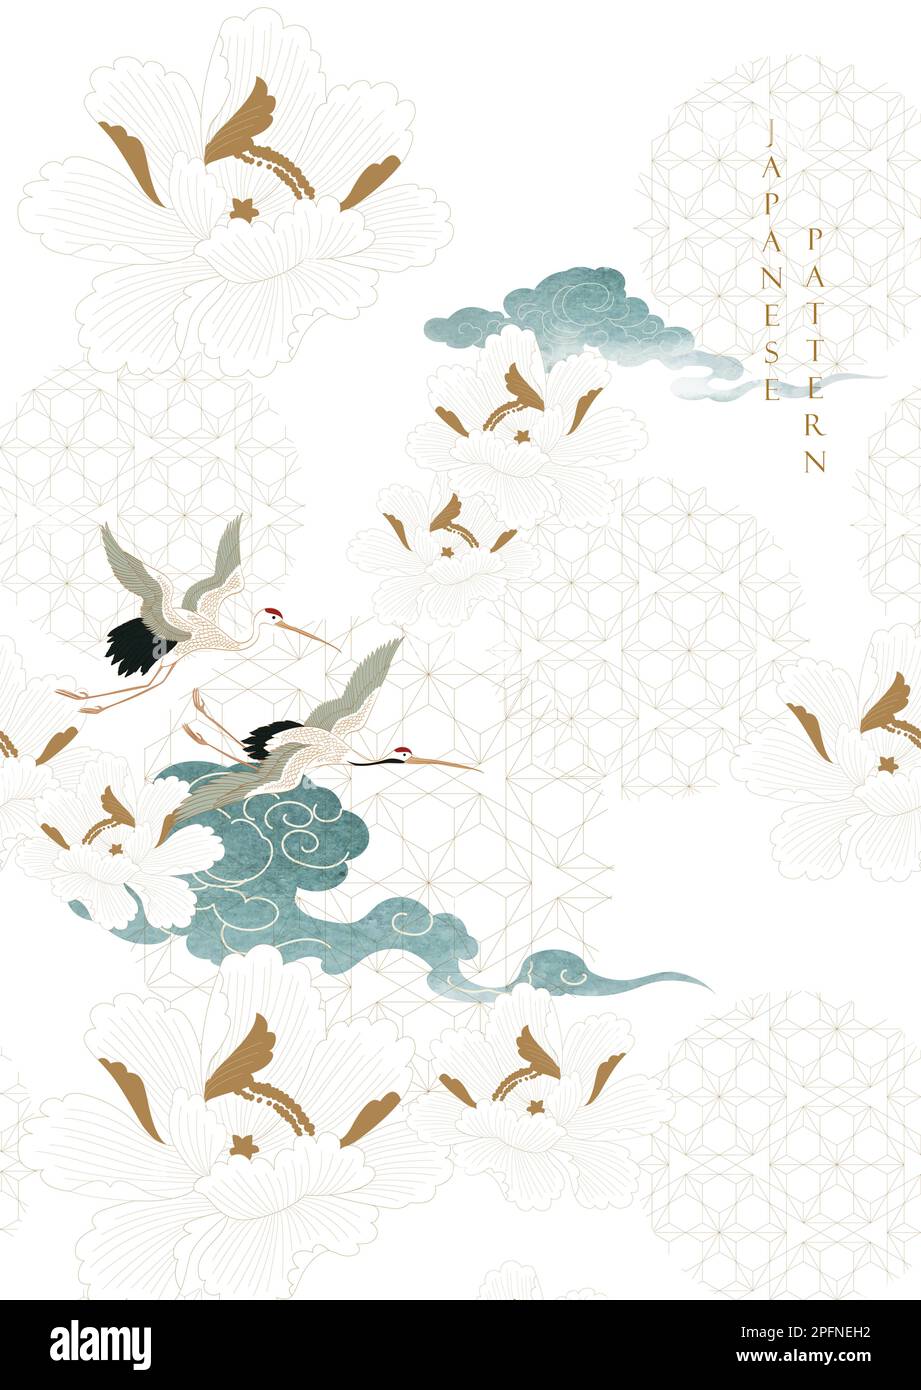 Kranvögel-Element. Chinesische Wolkendekoration mit blauer, wasserfarbener Textur im Vintage-Stil. Abstrakte Kunstlandschaft mit Pfingstrosen und lea Stock Vektor